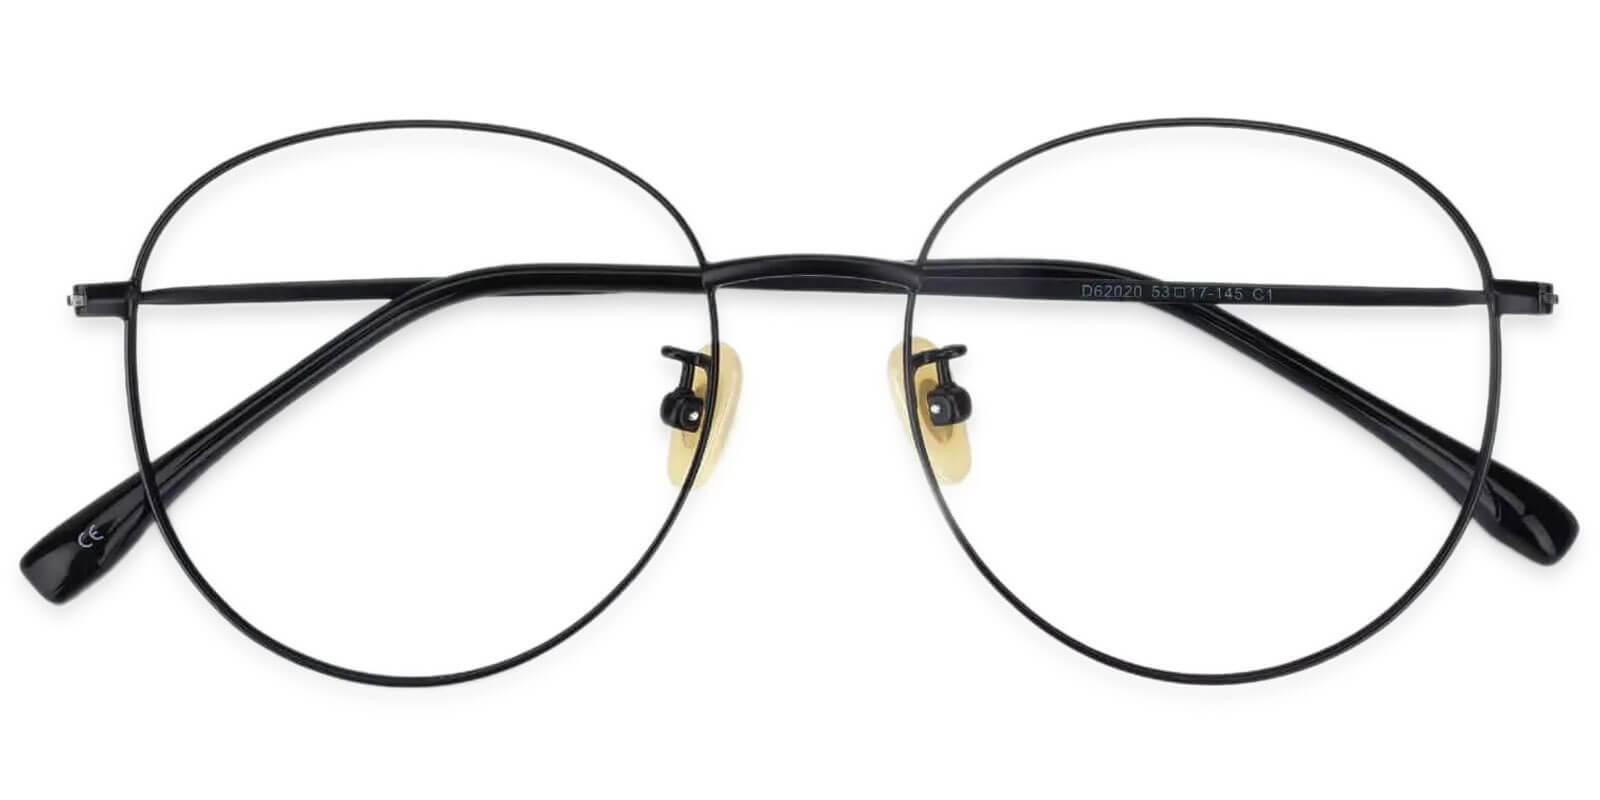 Mongolia Black Titanium Eyeglasses , Lightweight , NosePads Frames from ABBE Glasses